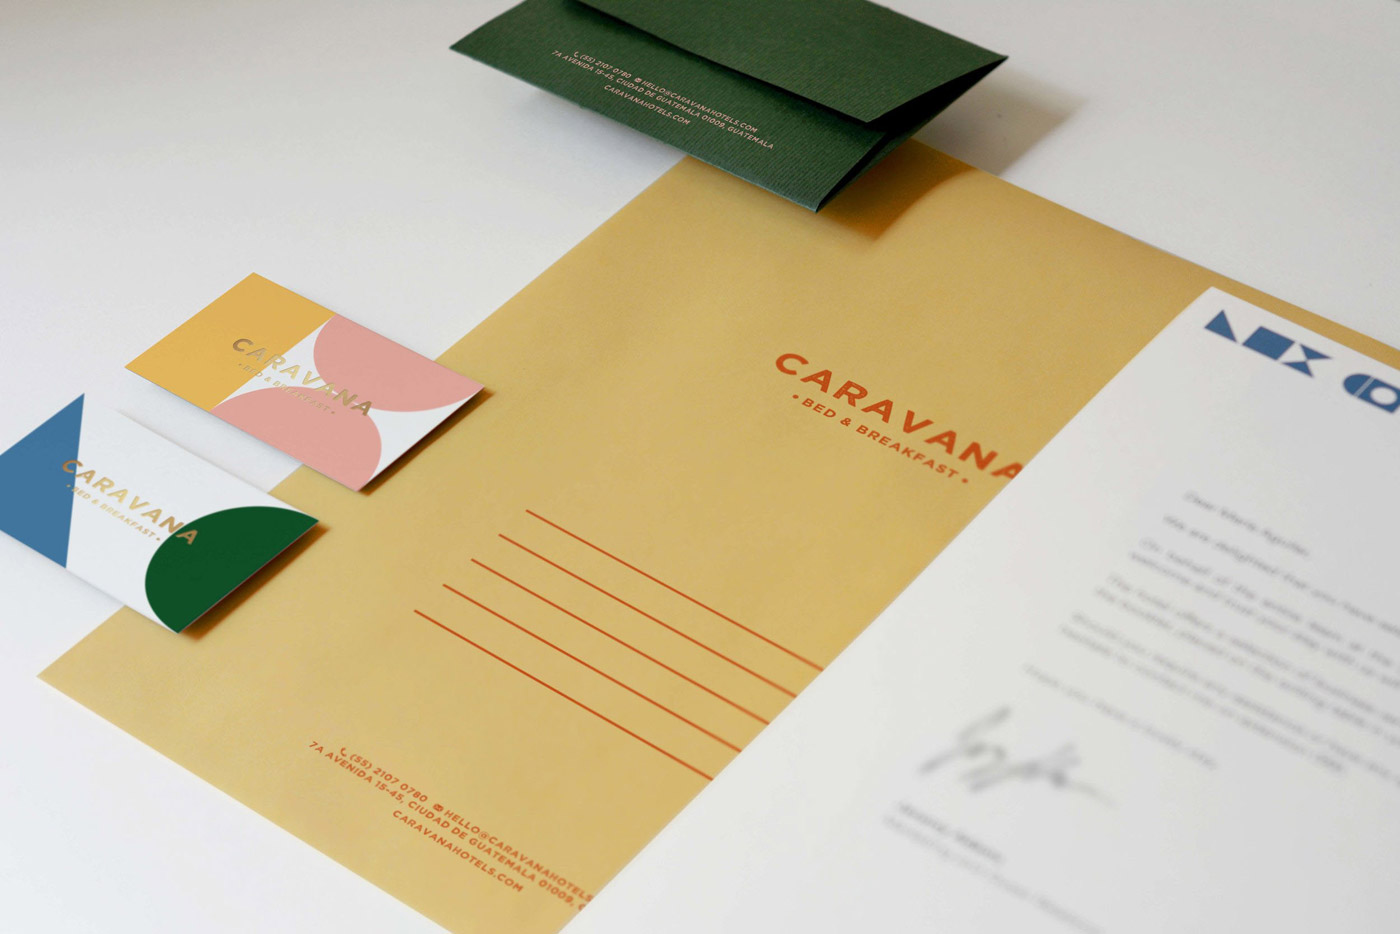 CARAVANA Bed & Breakfast branding by Panel Studio